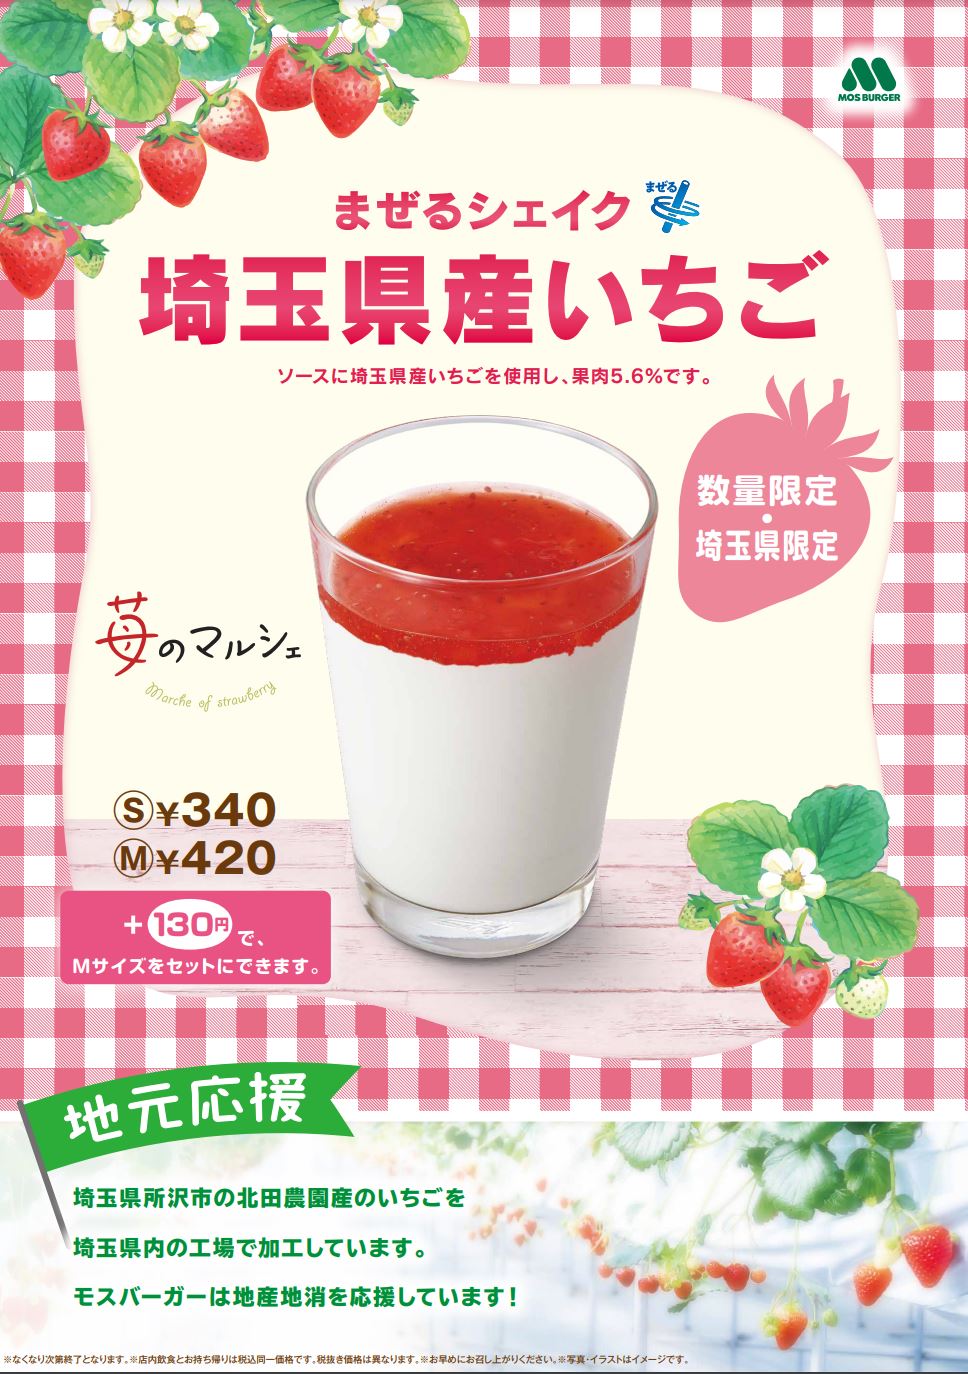 【吉川市】埼玉県産いちごを使った限定シェイクを飲んできました！